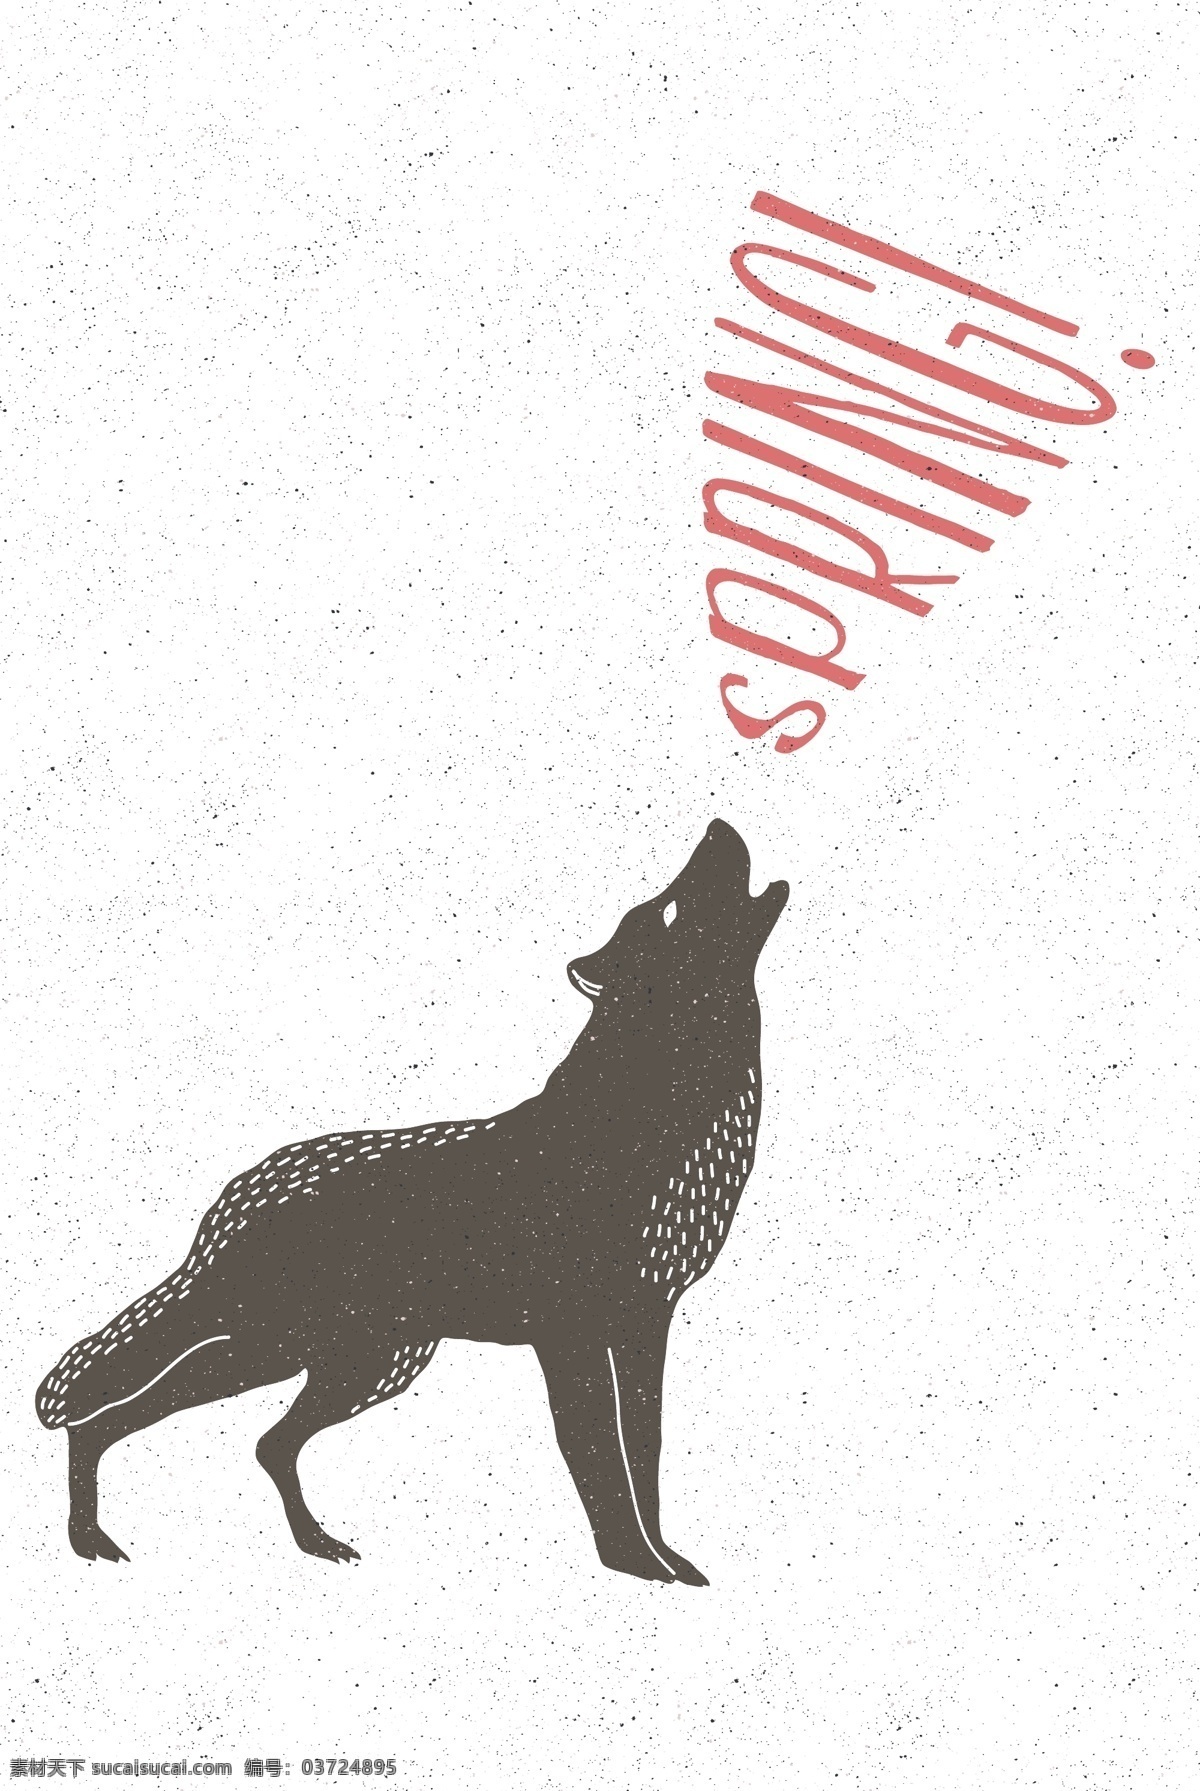 手绘狼插画 清新动物 动物 手绘动物 矢量素材 手绘狼 狼